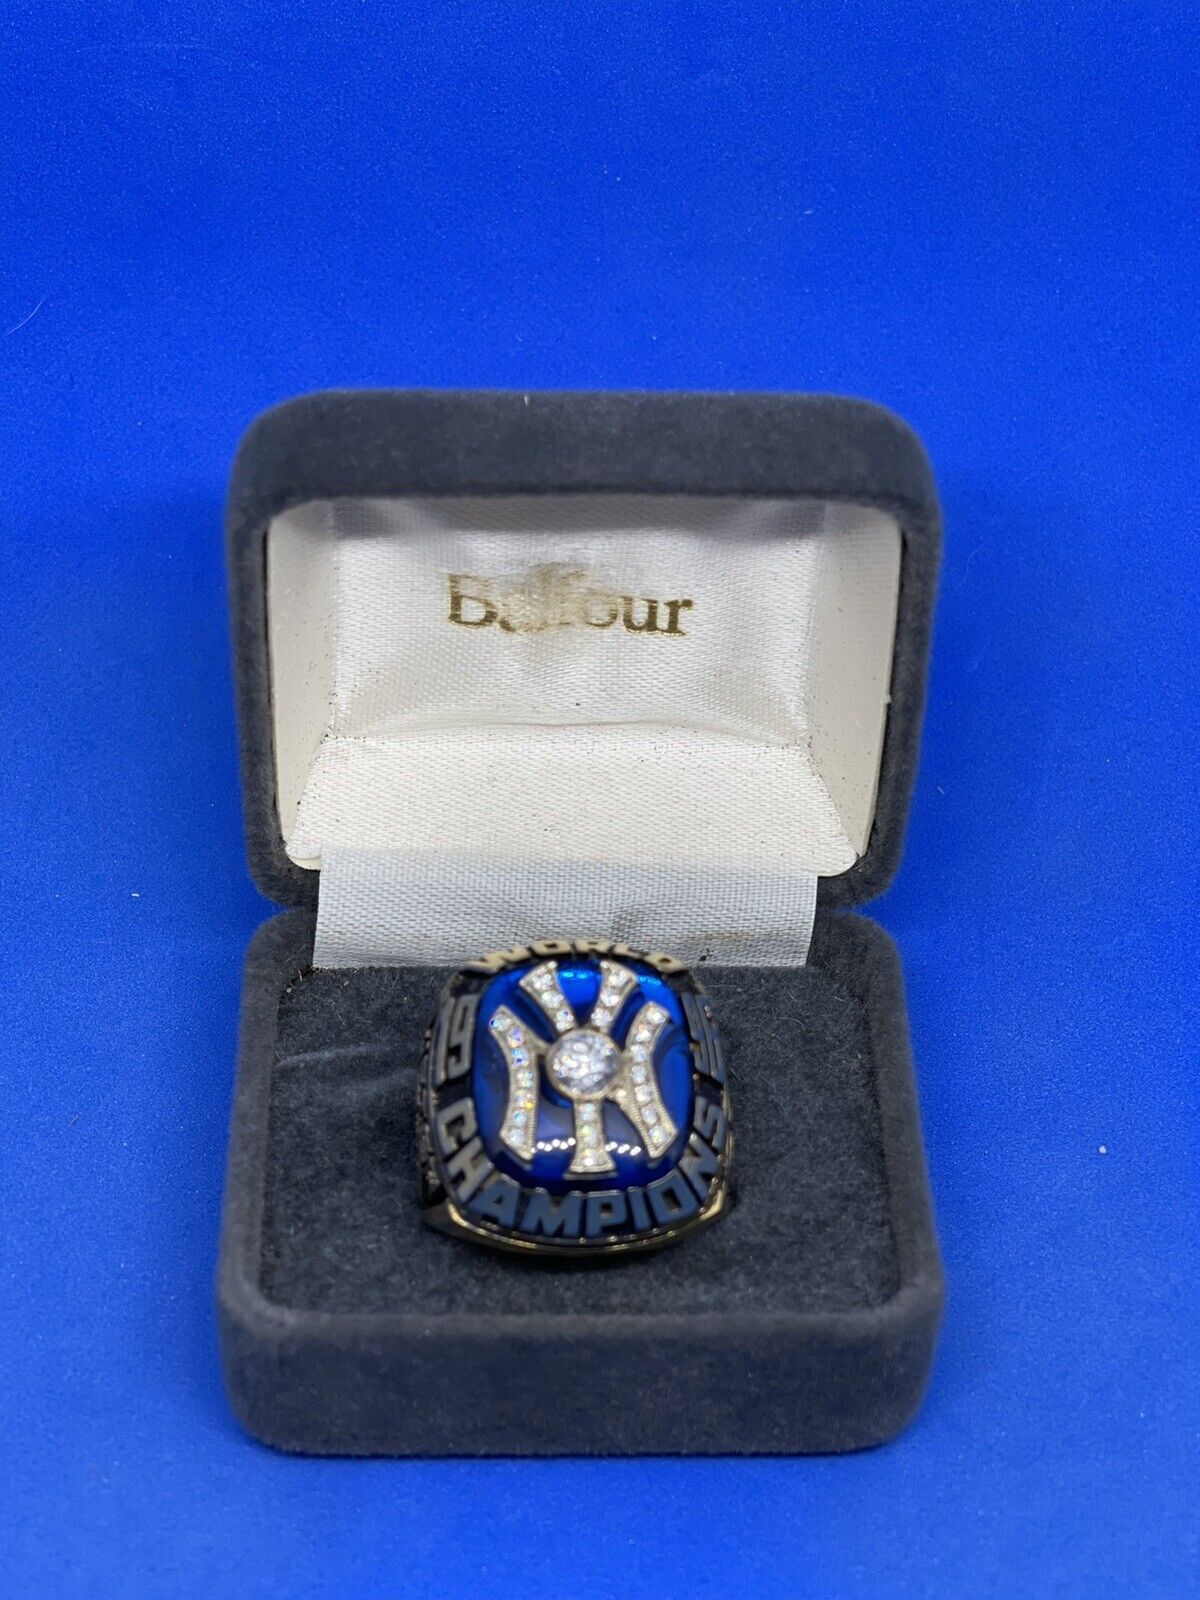 Derek Jeter Salesman Sample 1996 World Series Ring 1/1 Balfour box Case Yankees